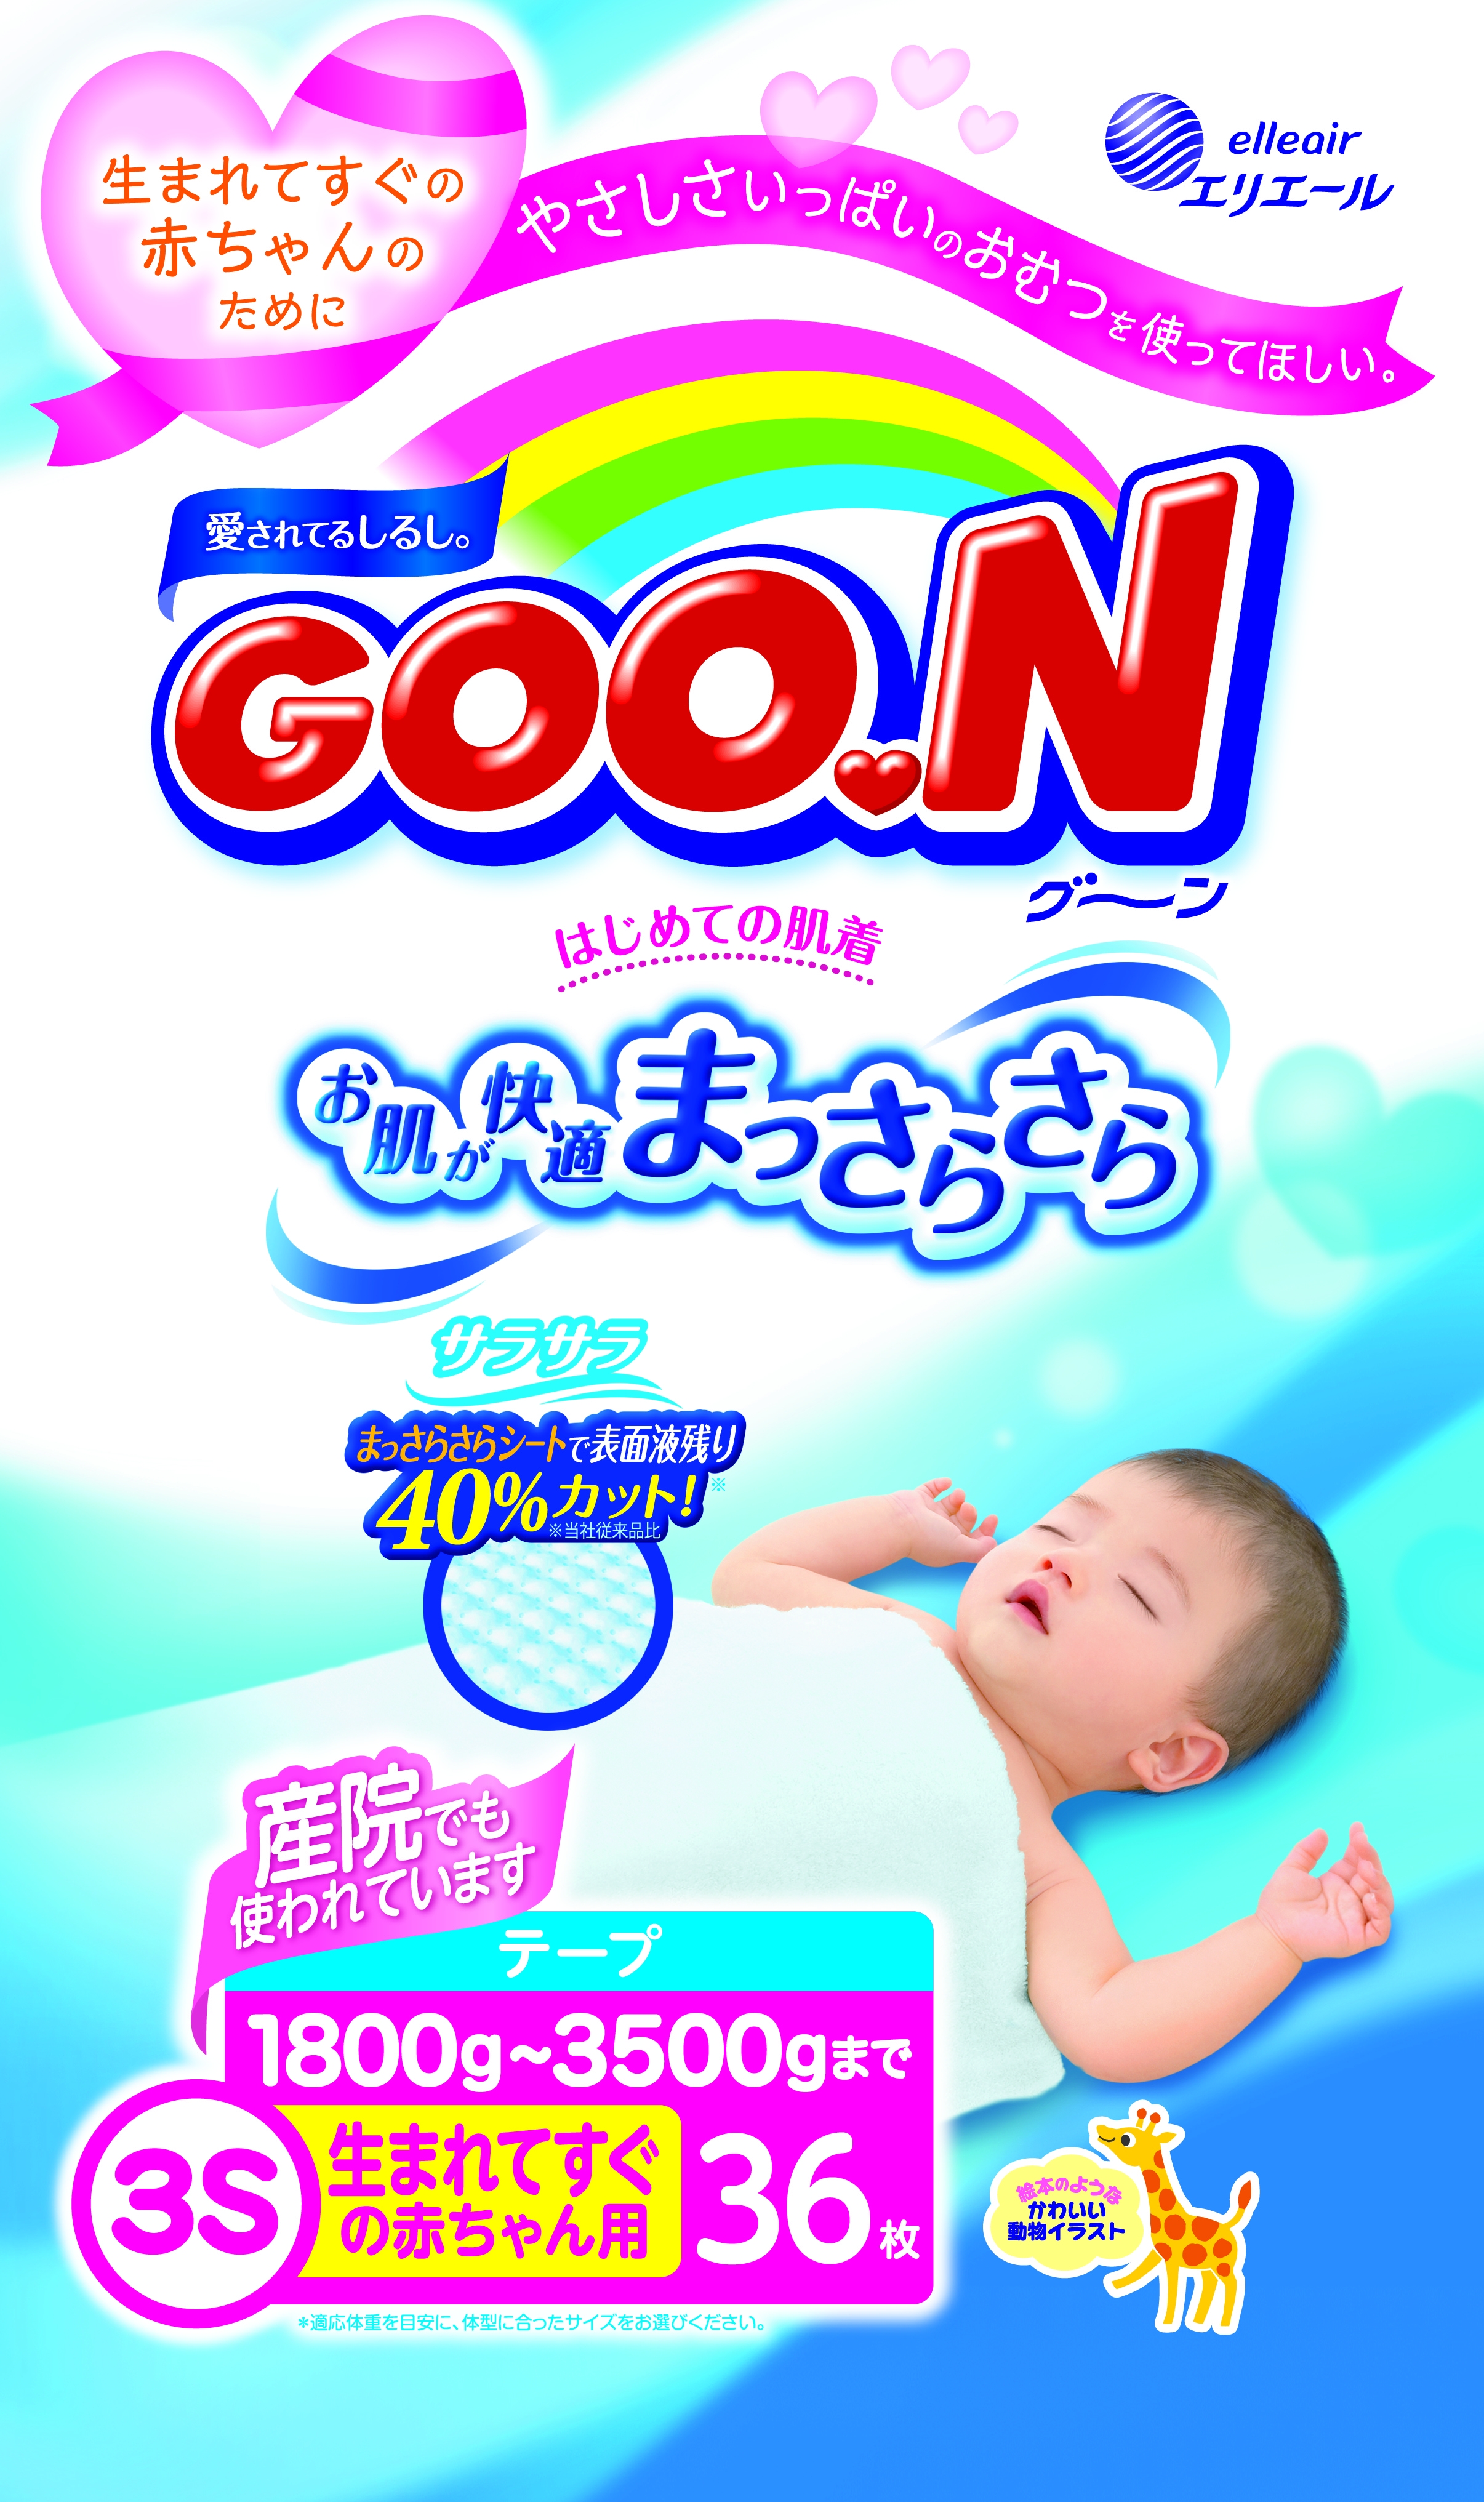 敏感な赤ちゃんの肌にやさしい安心のやわらかさ Goo N生まれてすぐの赤ちゃん用シリーズリニューアル 大王製紙株式会社のプレスリリース